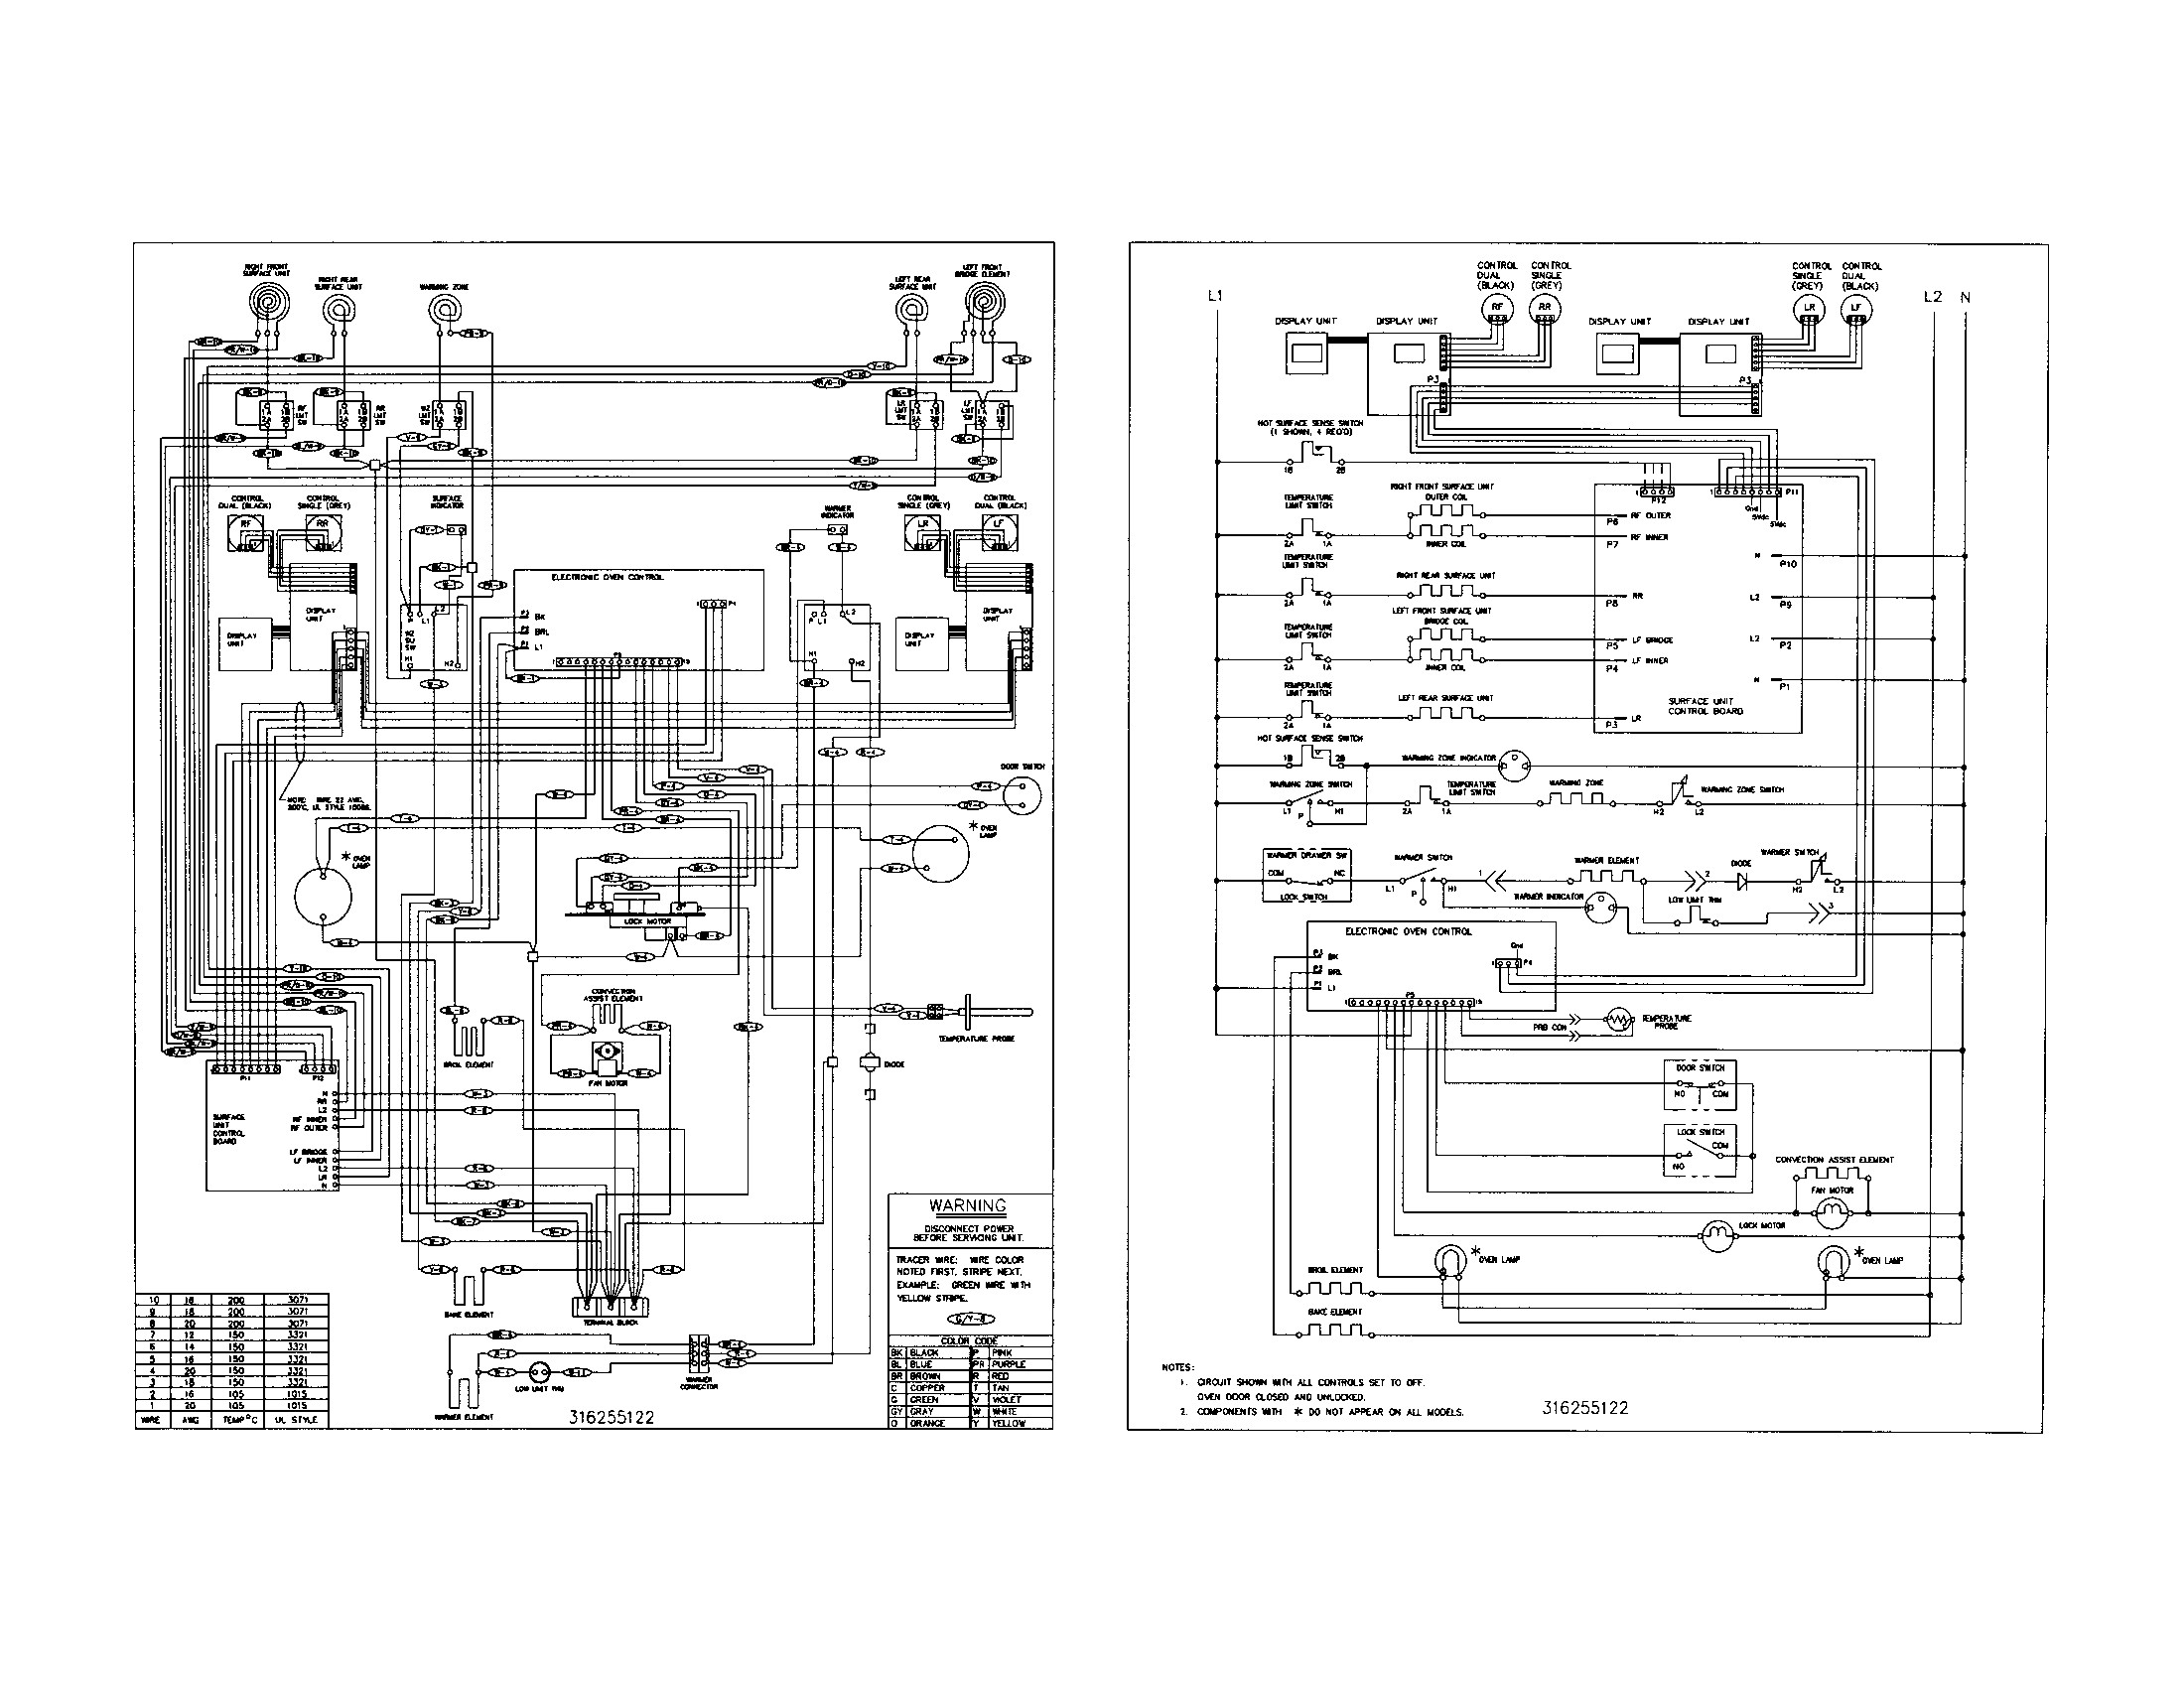 Kenmore Washer Wiring Diagram Oven Wiring Diagram Sears Layout Wiring Diagrams • Of Kenmore Washer Wiring Diagram